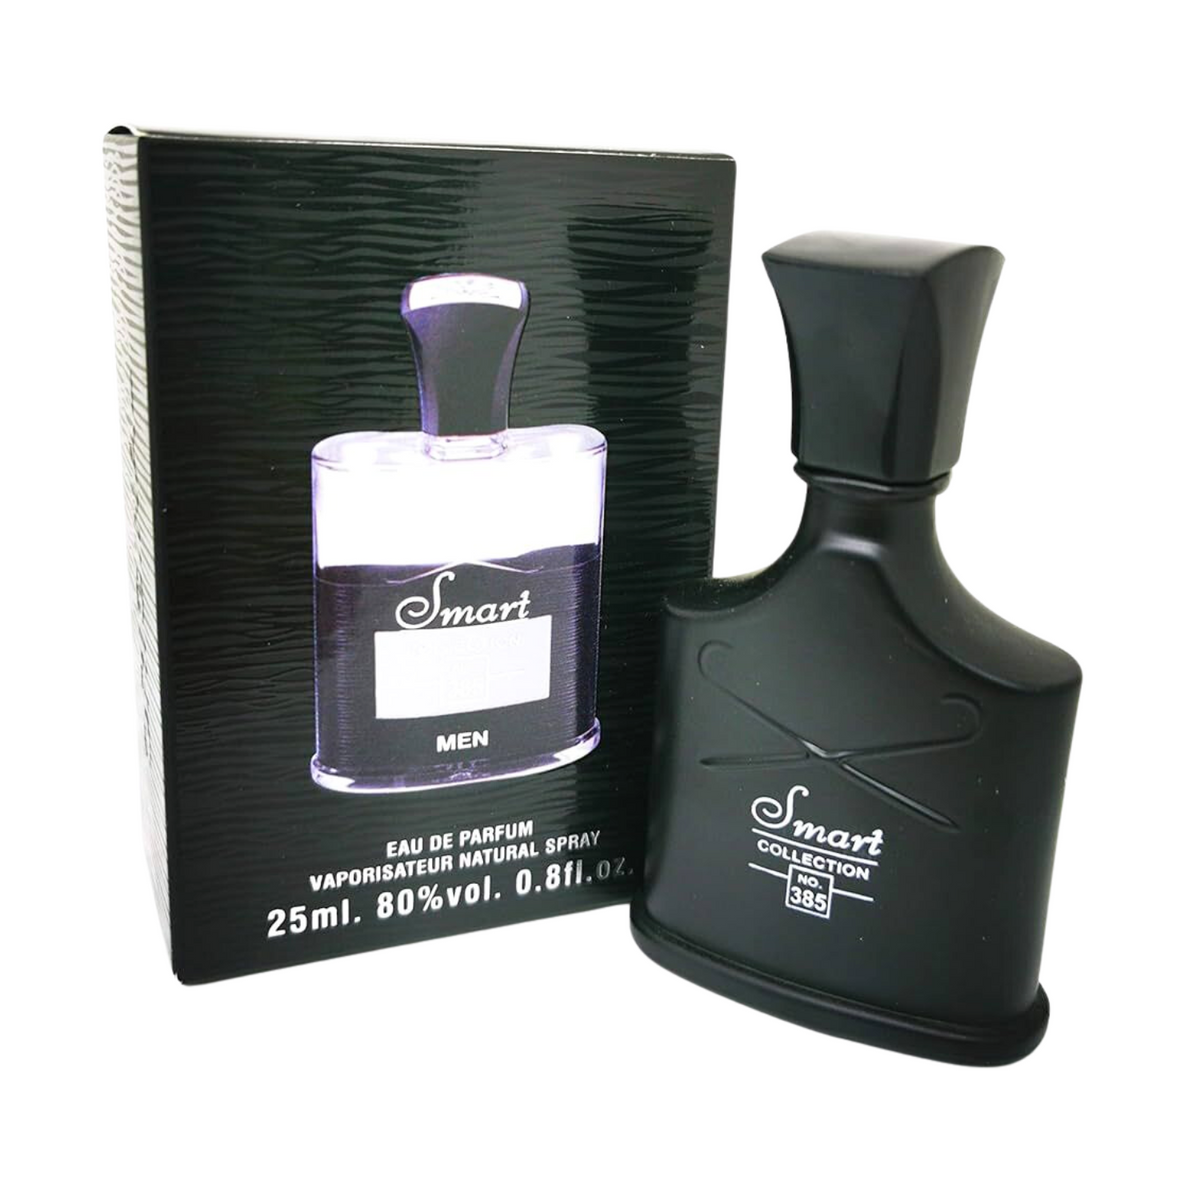 smart-collection-mens-no-385-eau-de-parfum-25ml